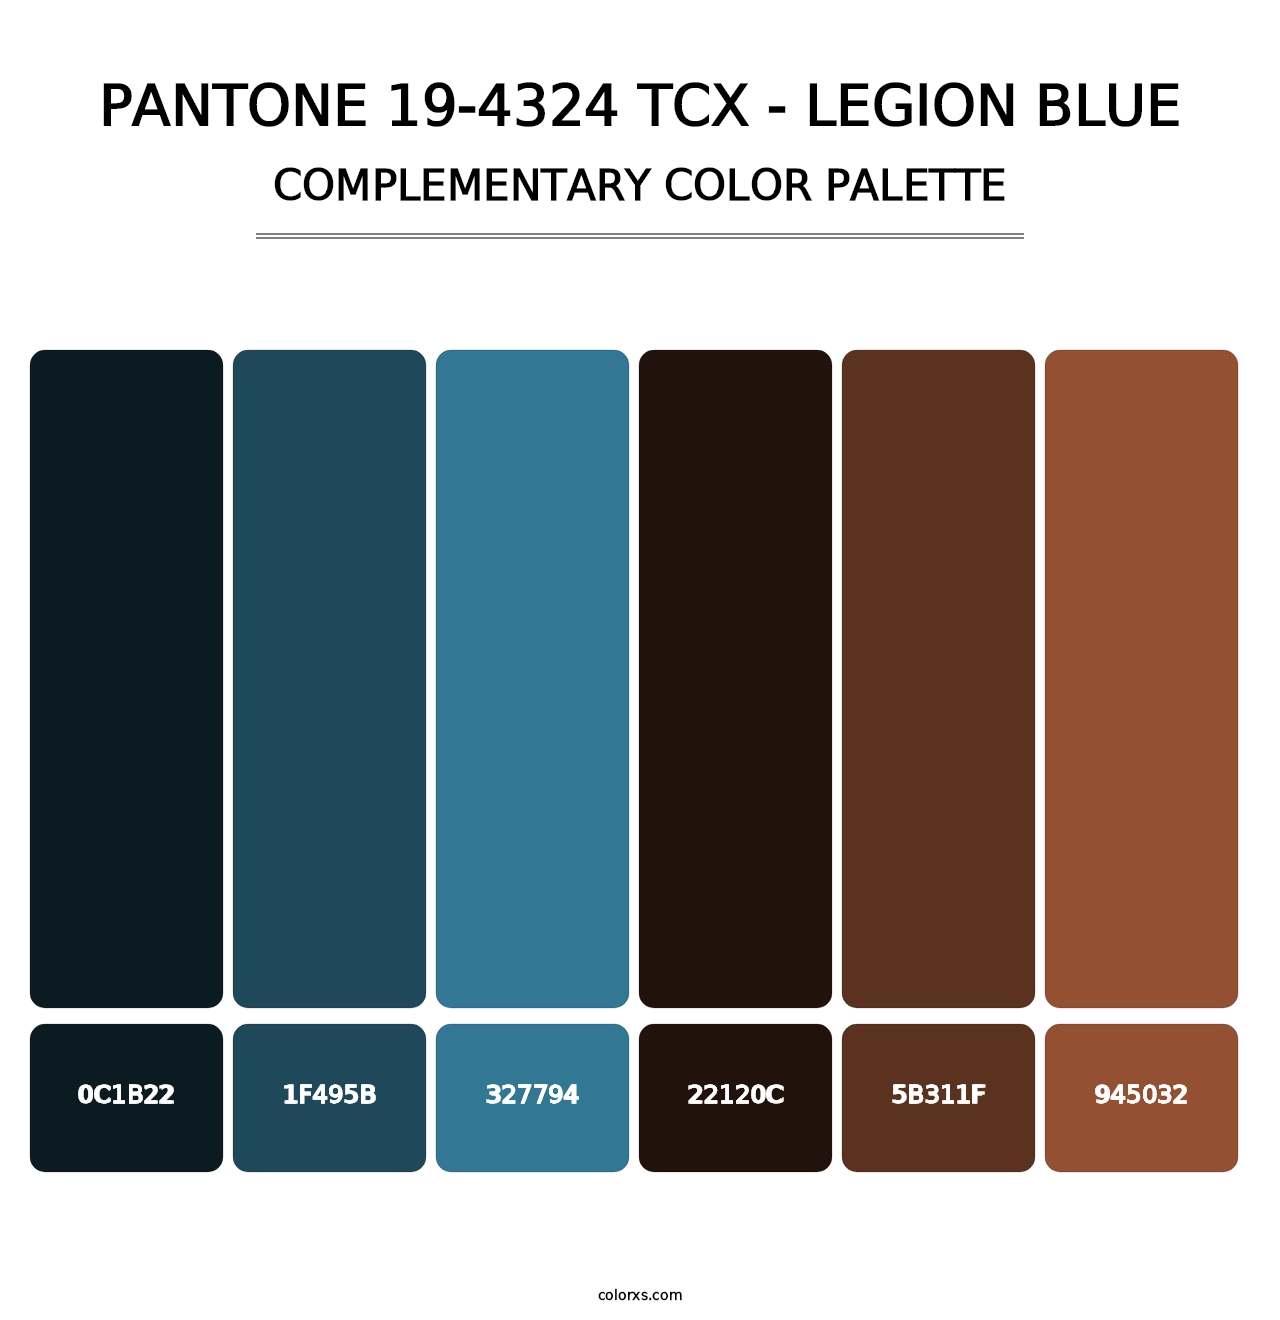 PANTONE 19-4324 TCX - Legion Blue - Complementary Color Palette